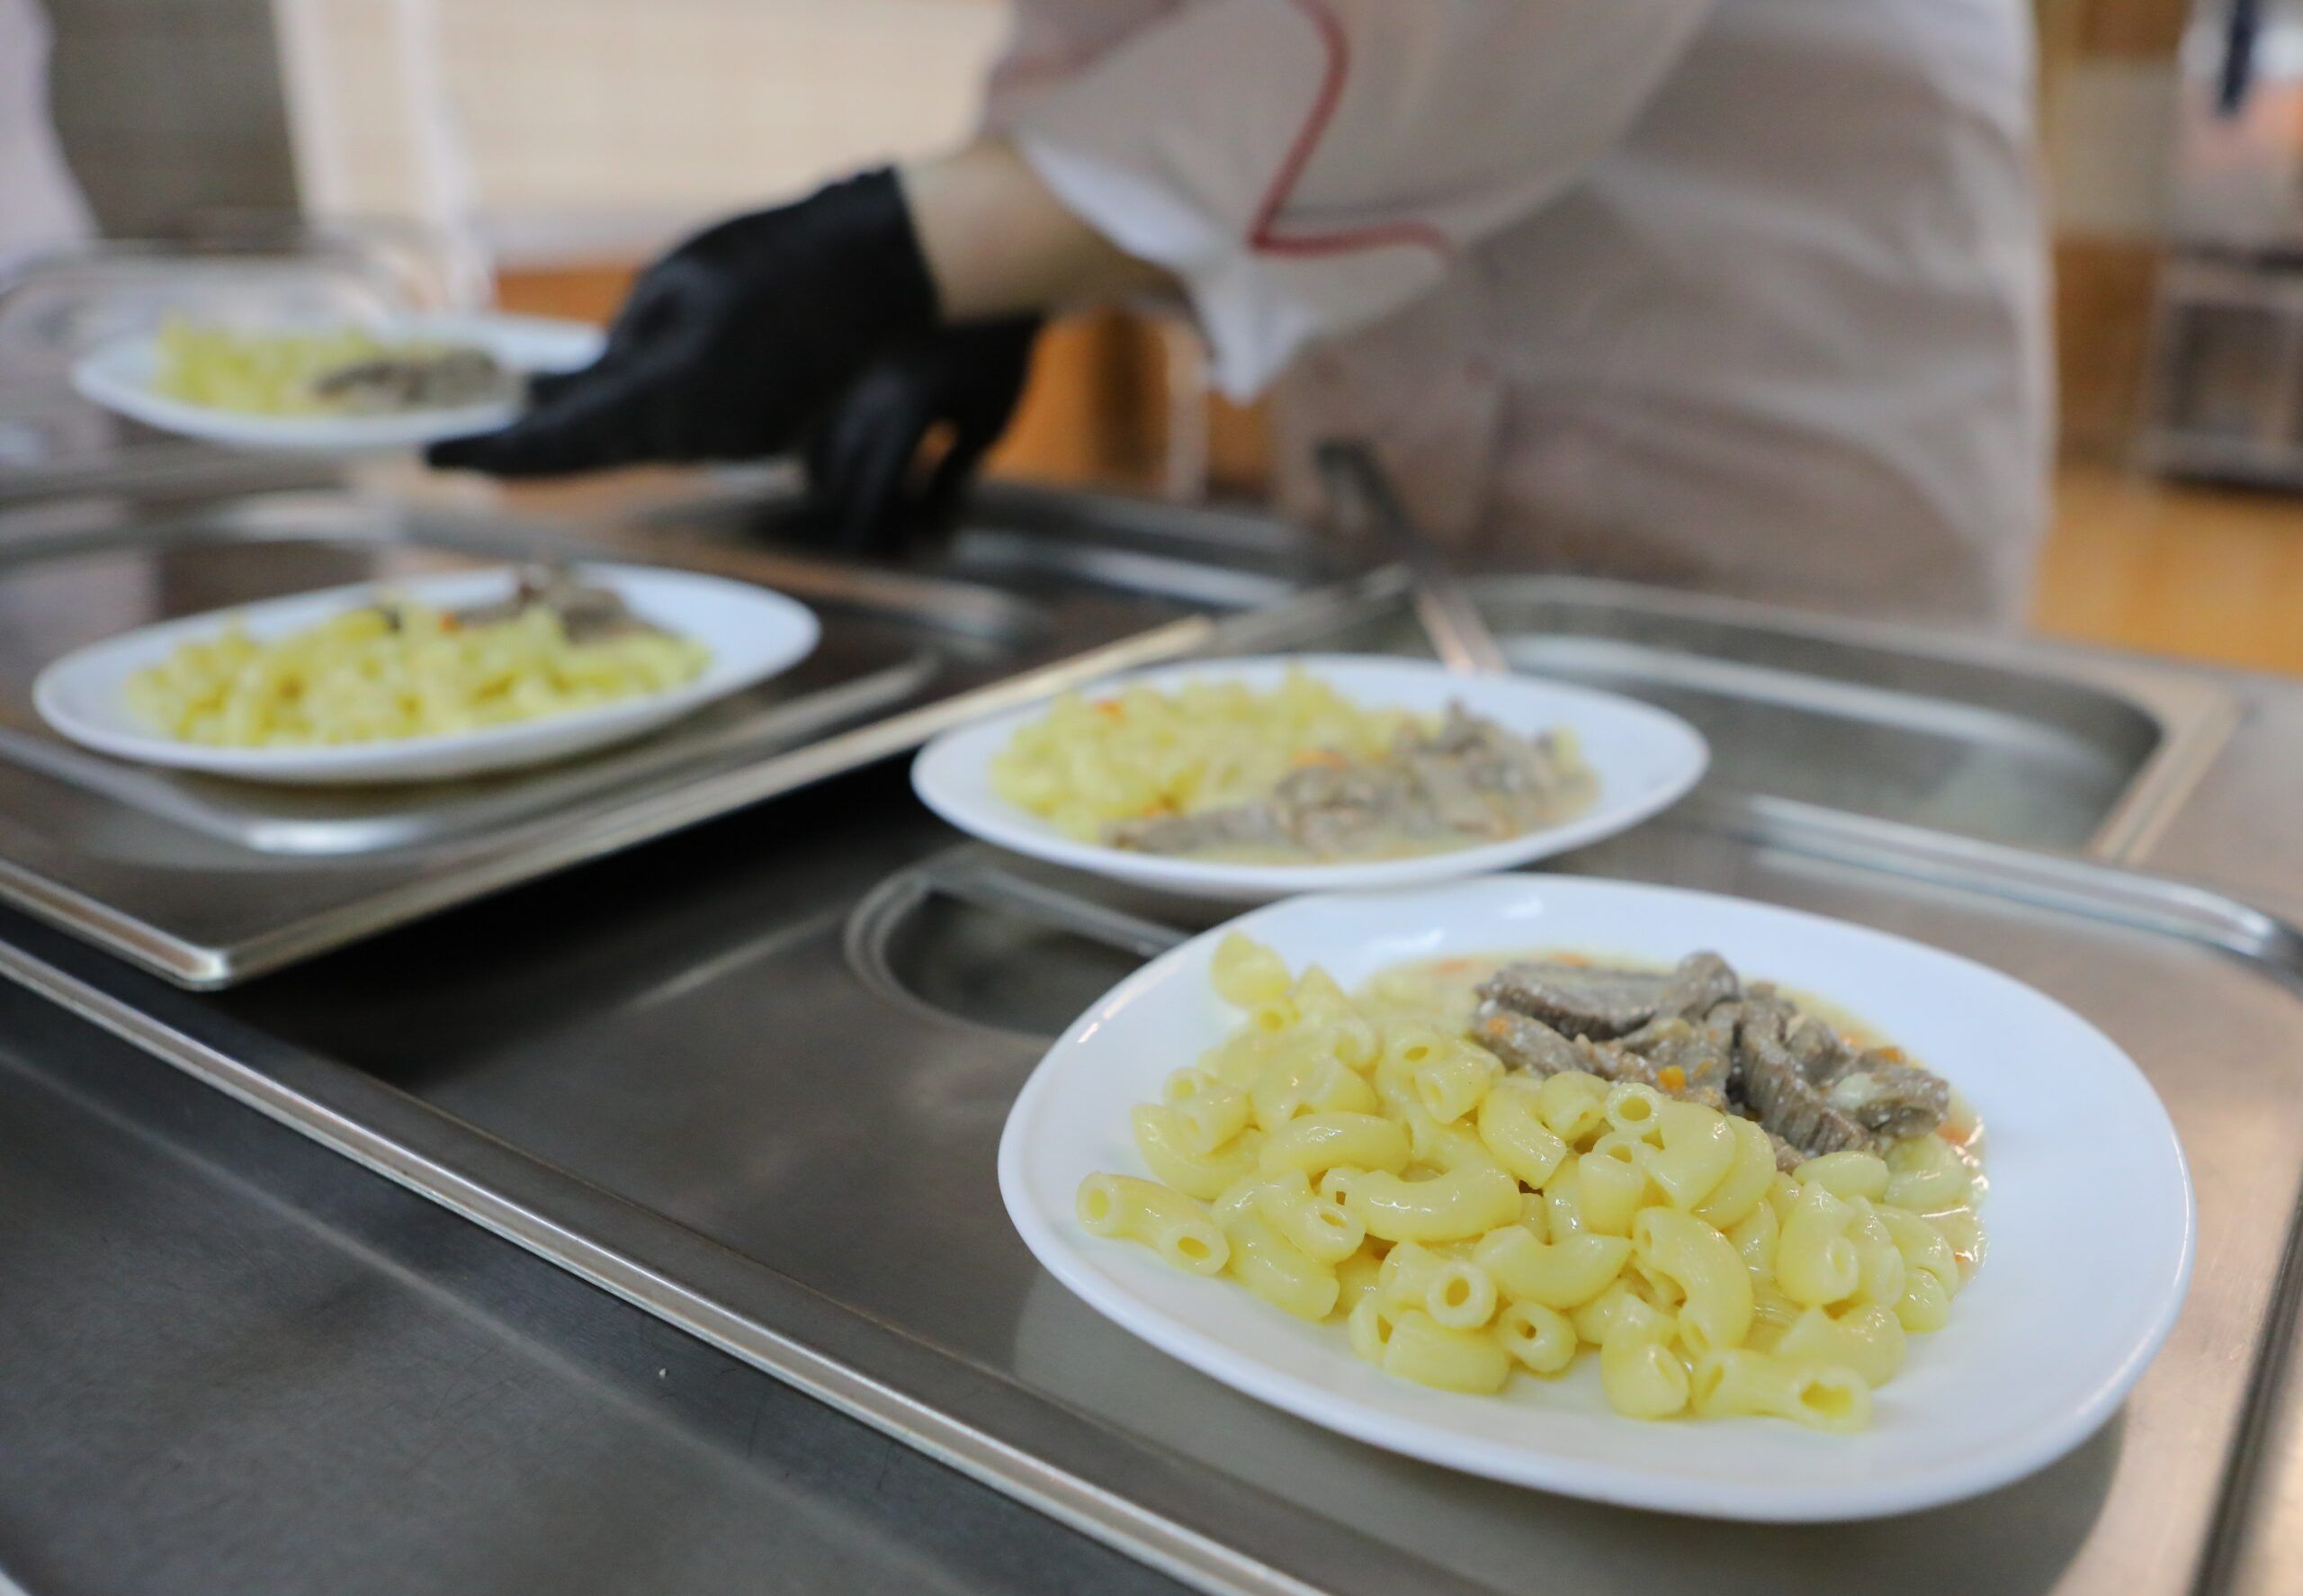 УСП Петербурга разрешило кормить школьников дешёвыми аналогами качественных продуктов